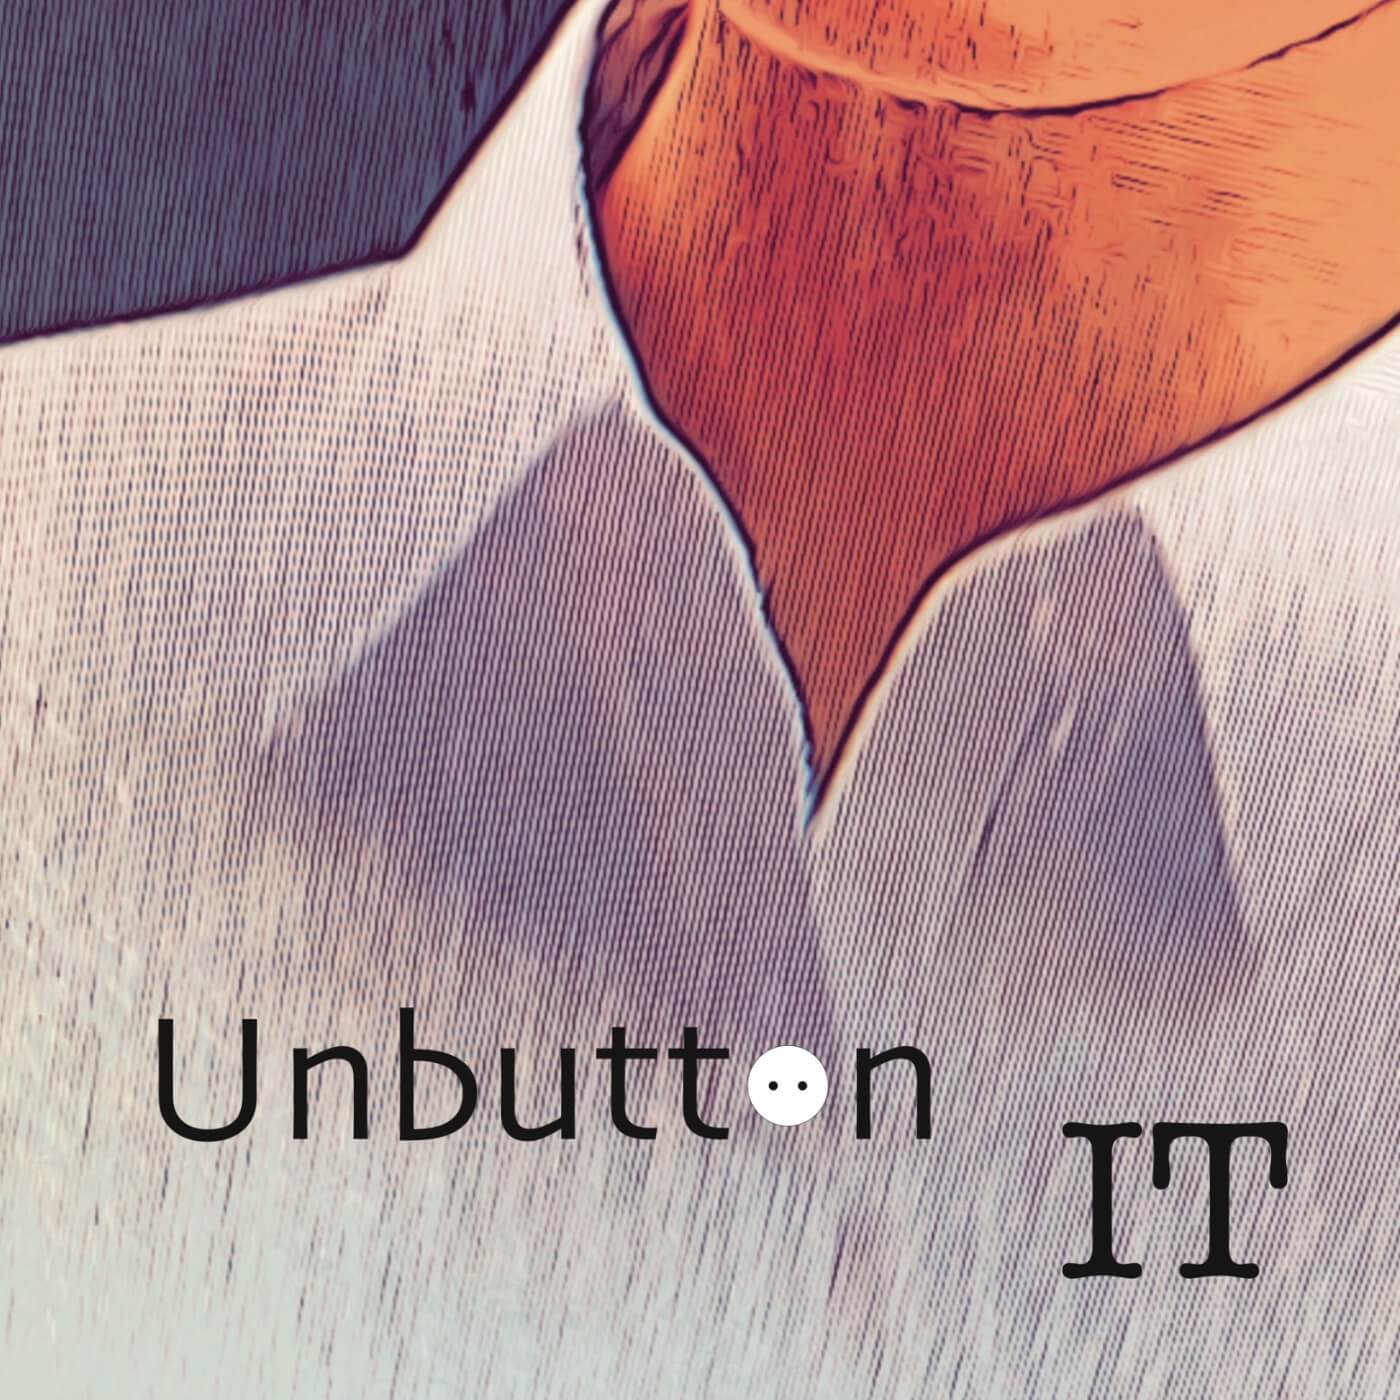 Unbutton It